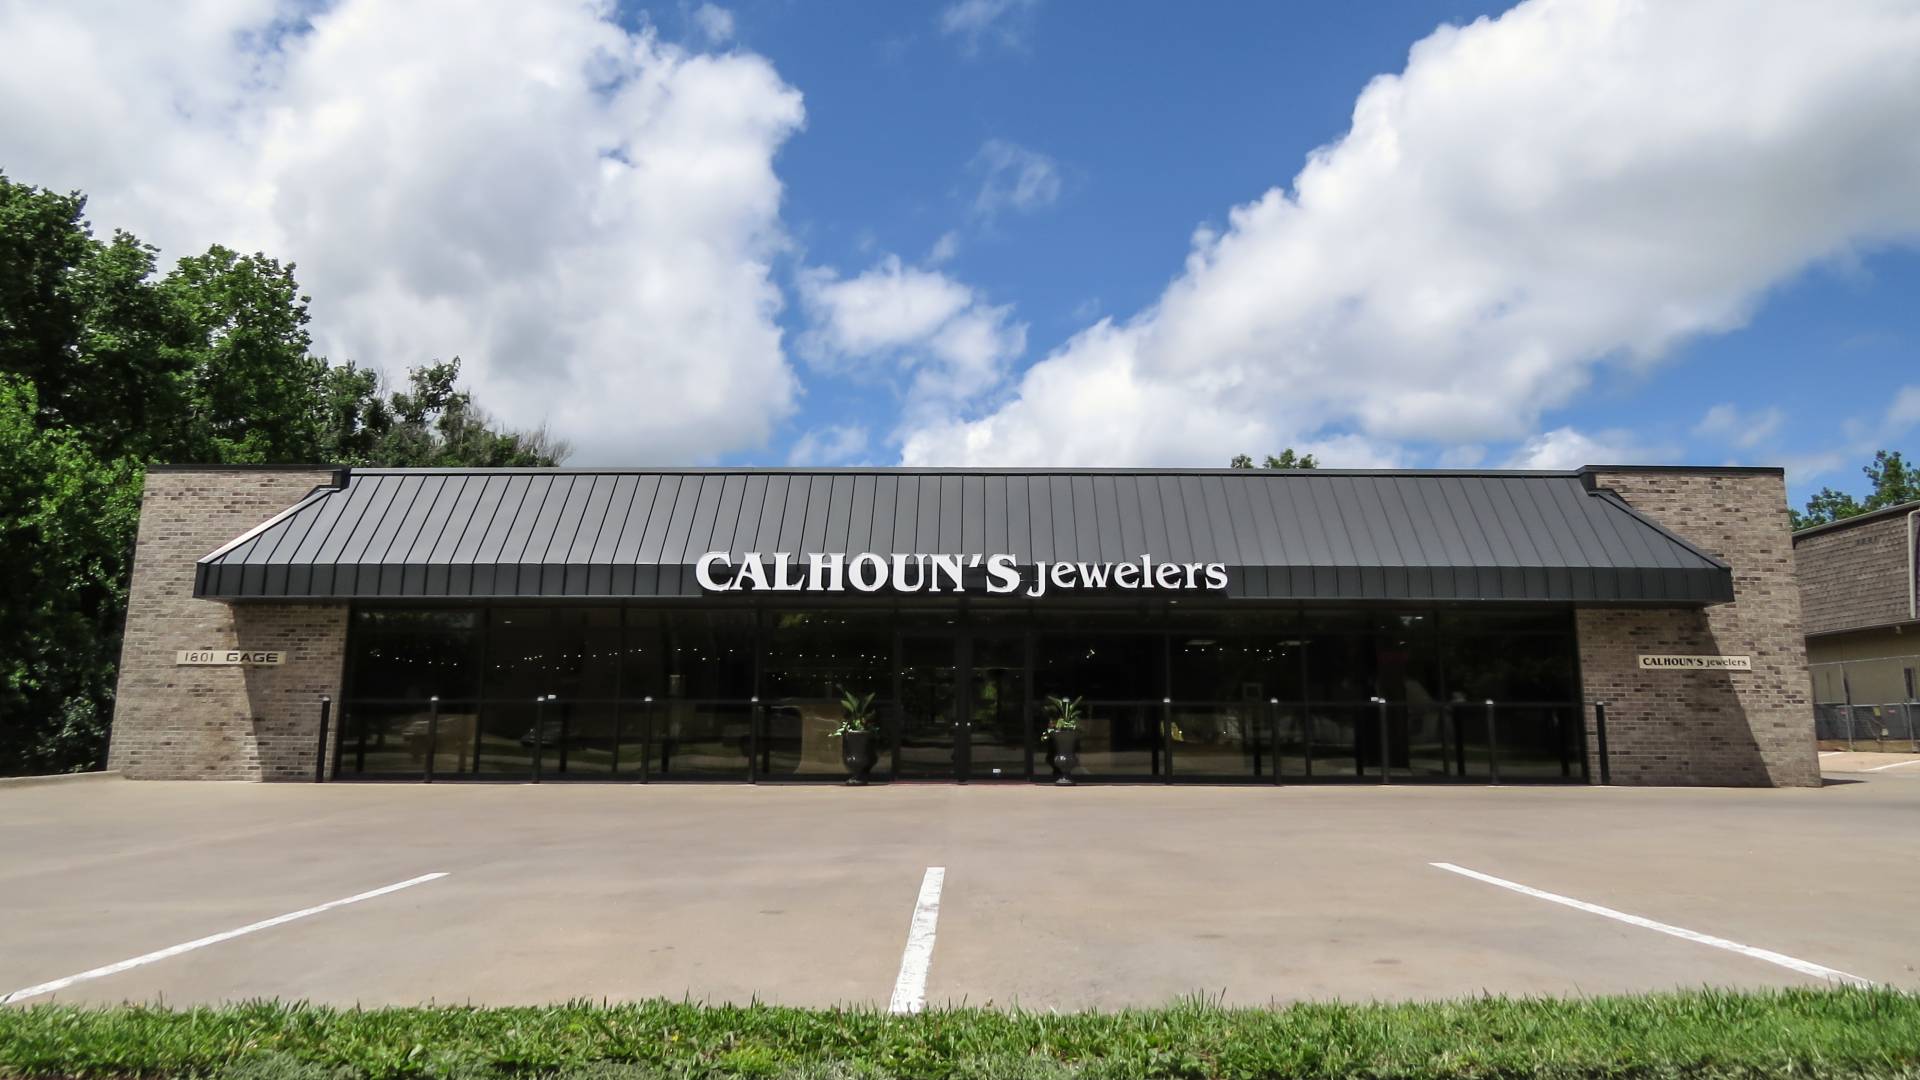 Calhoun’s Jewelers